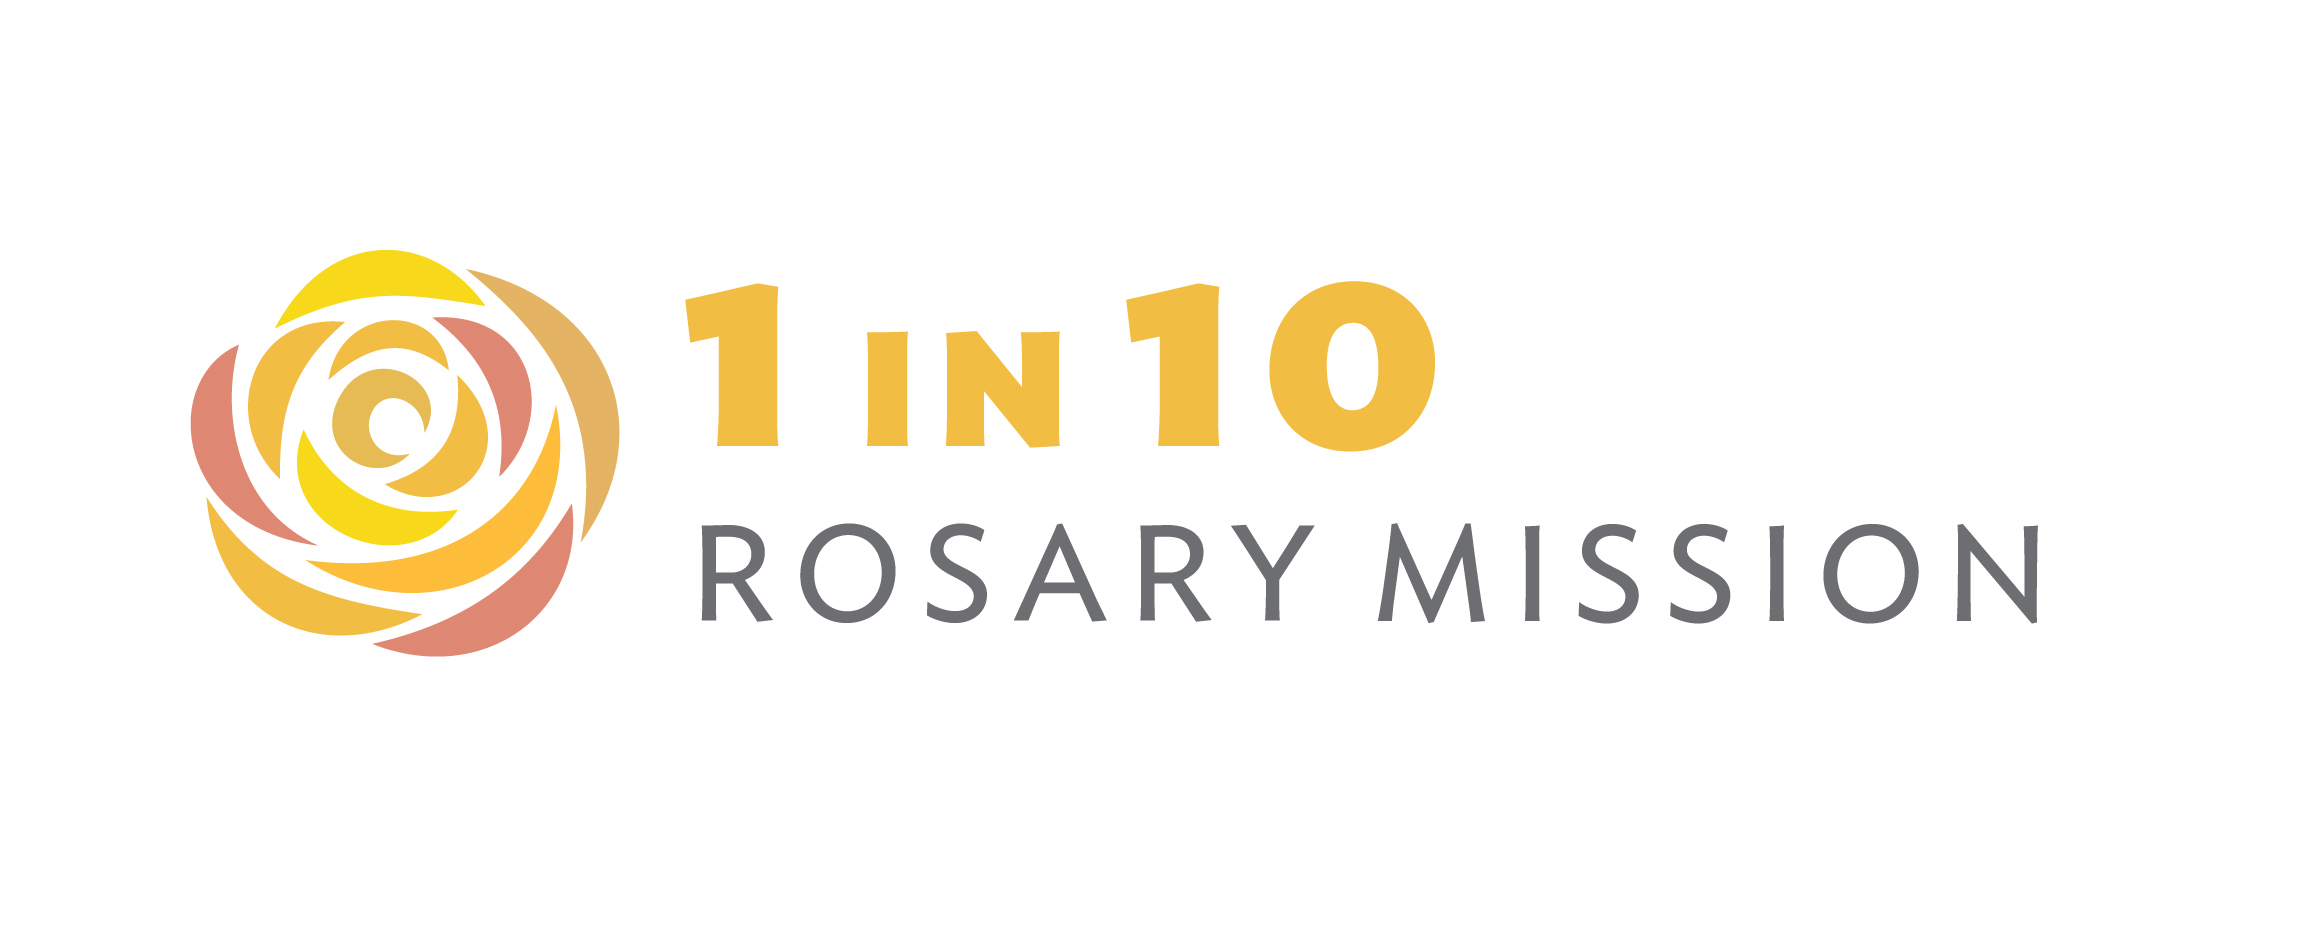 Rosary Mission Ireland logo